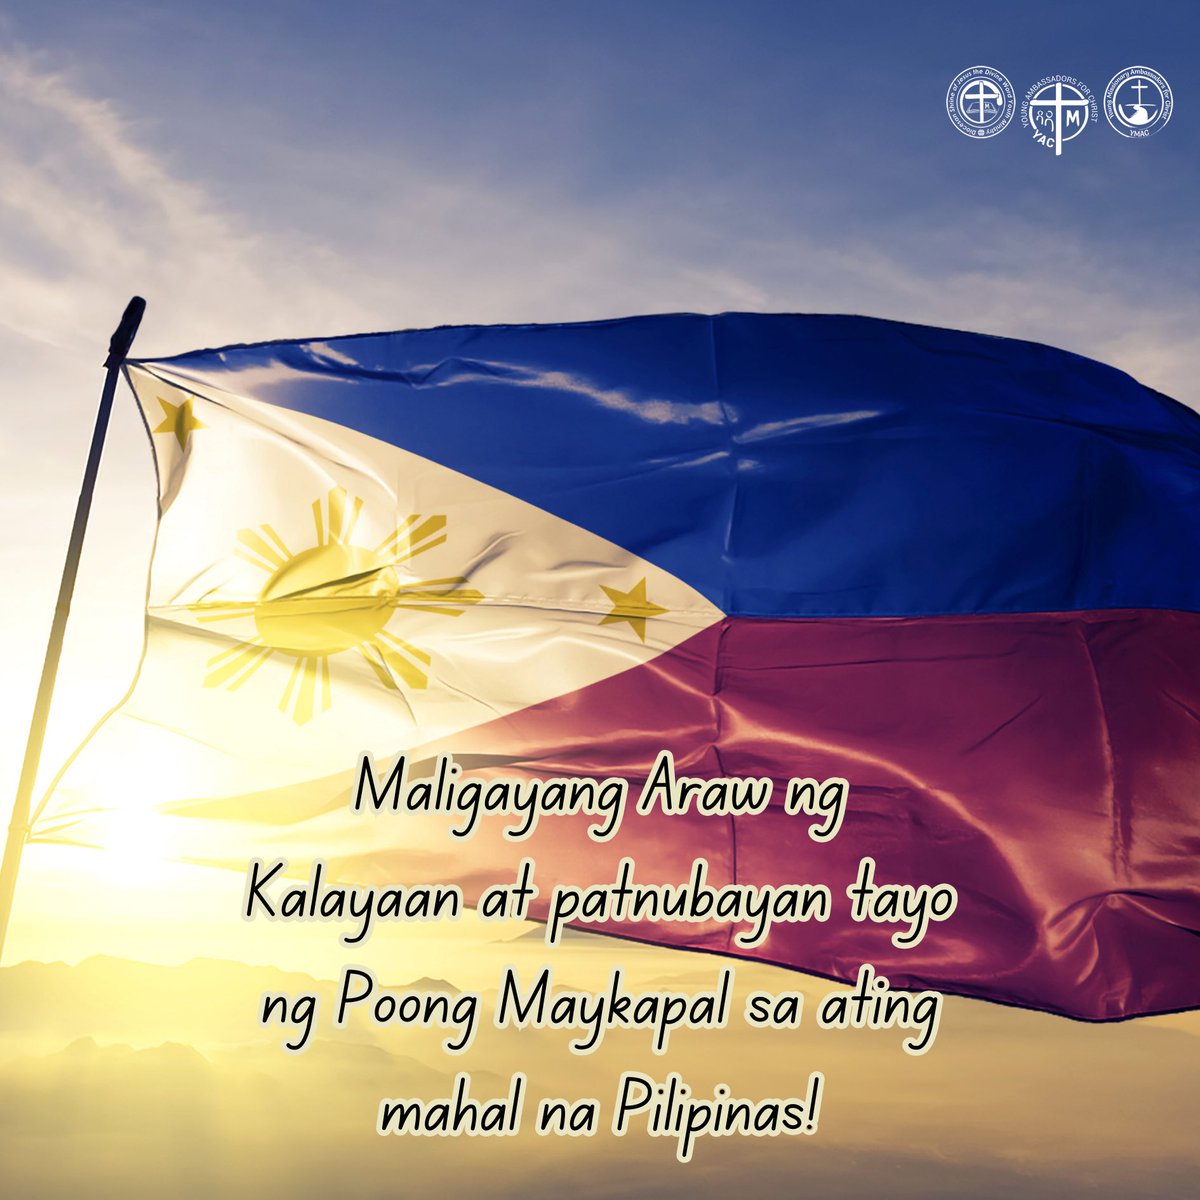 Happy Independence Day! May God bless the Philippines!

#IndependenceDay #ArawNgKalayaan
#PhilippineIndependenceDay #PinoyPride #ProudToBeFilipino #CelebratingFreedom

***

#YAC #YMAC #SYM #SVDyouth 
#SHRINEyouthMinistry #ShrineYouth